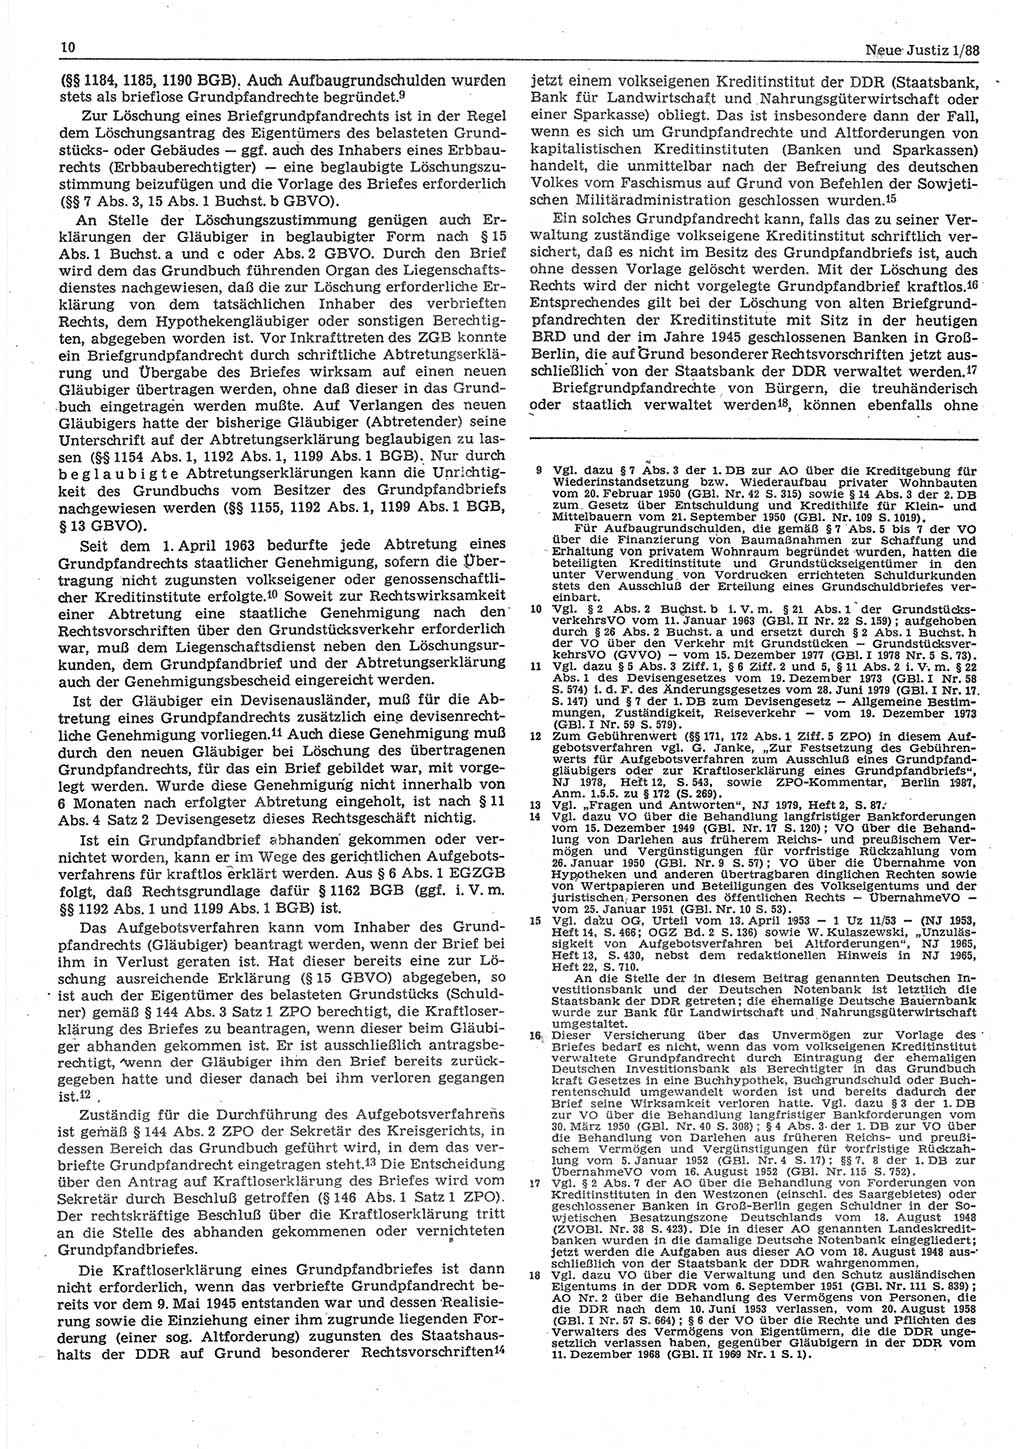 Neue Justiz (NJ), Zeitschrift für sozialistisches Recht und Gesetzlichkeit [Deutsche Demokratische Republik (DDR)], 42. Jahrgang 1988, Seite 10 (NJ DDR 1988, S. 10)